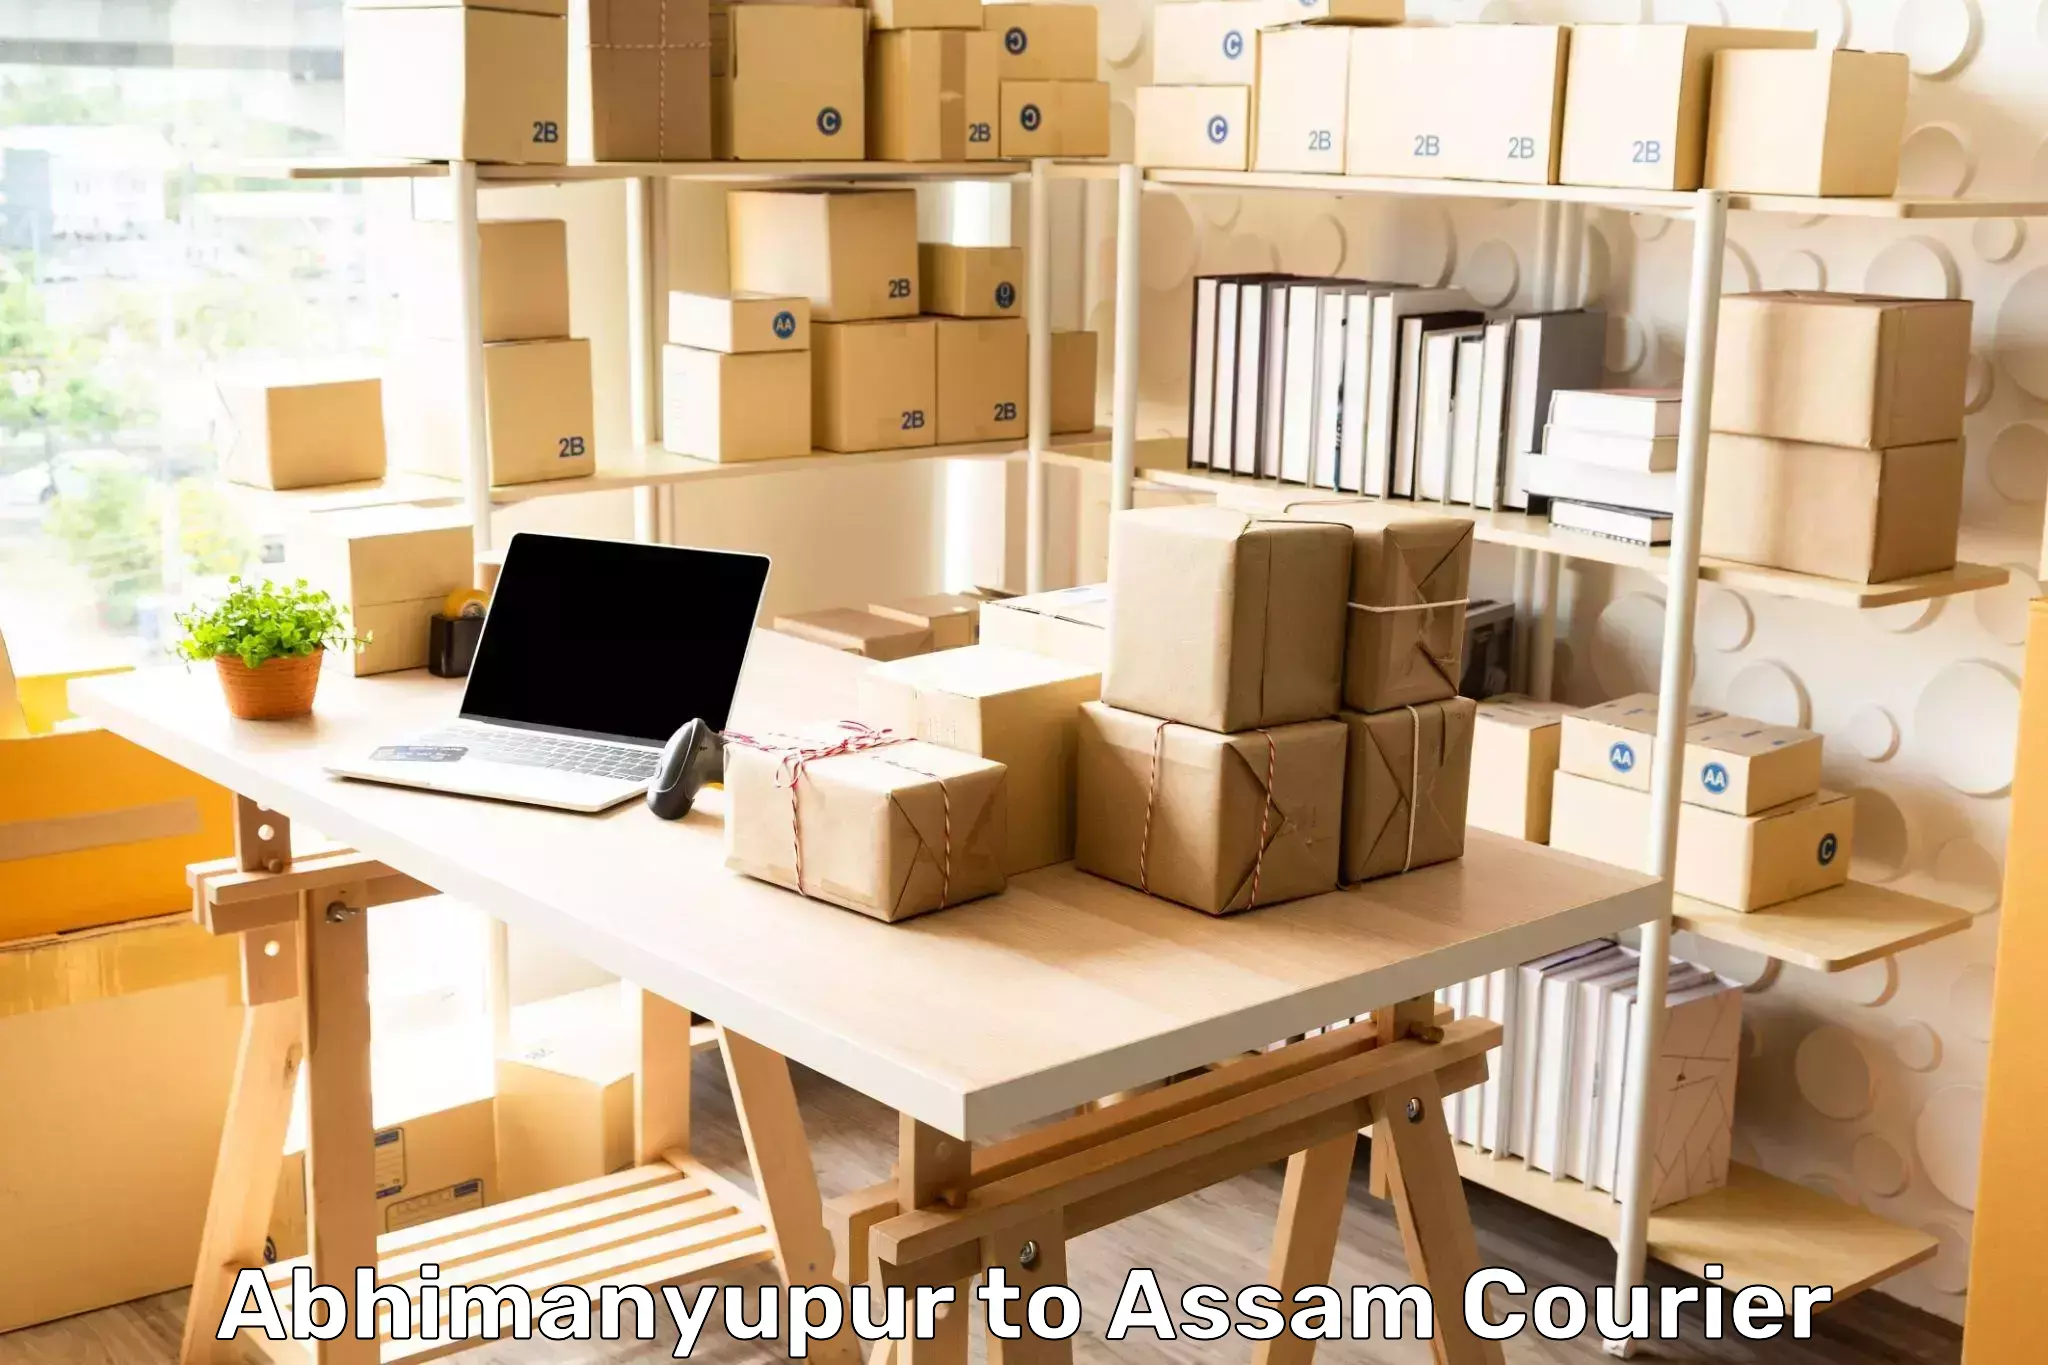 Bulk courier orders Abhimanyupur to Chapar